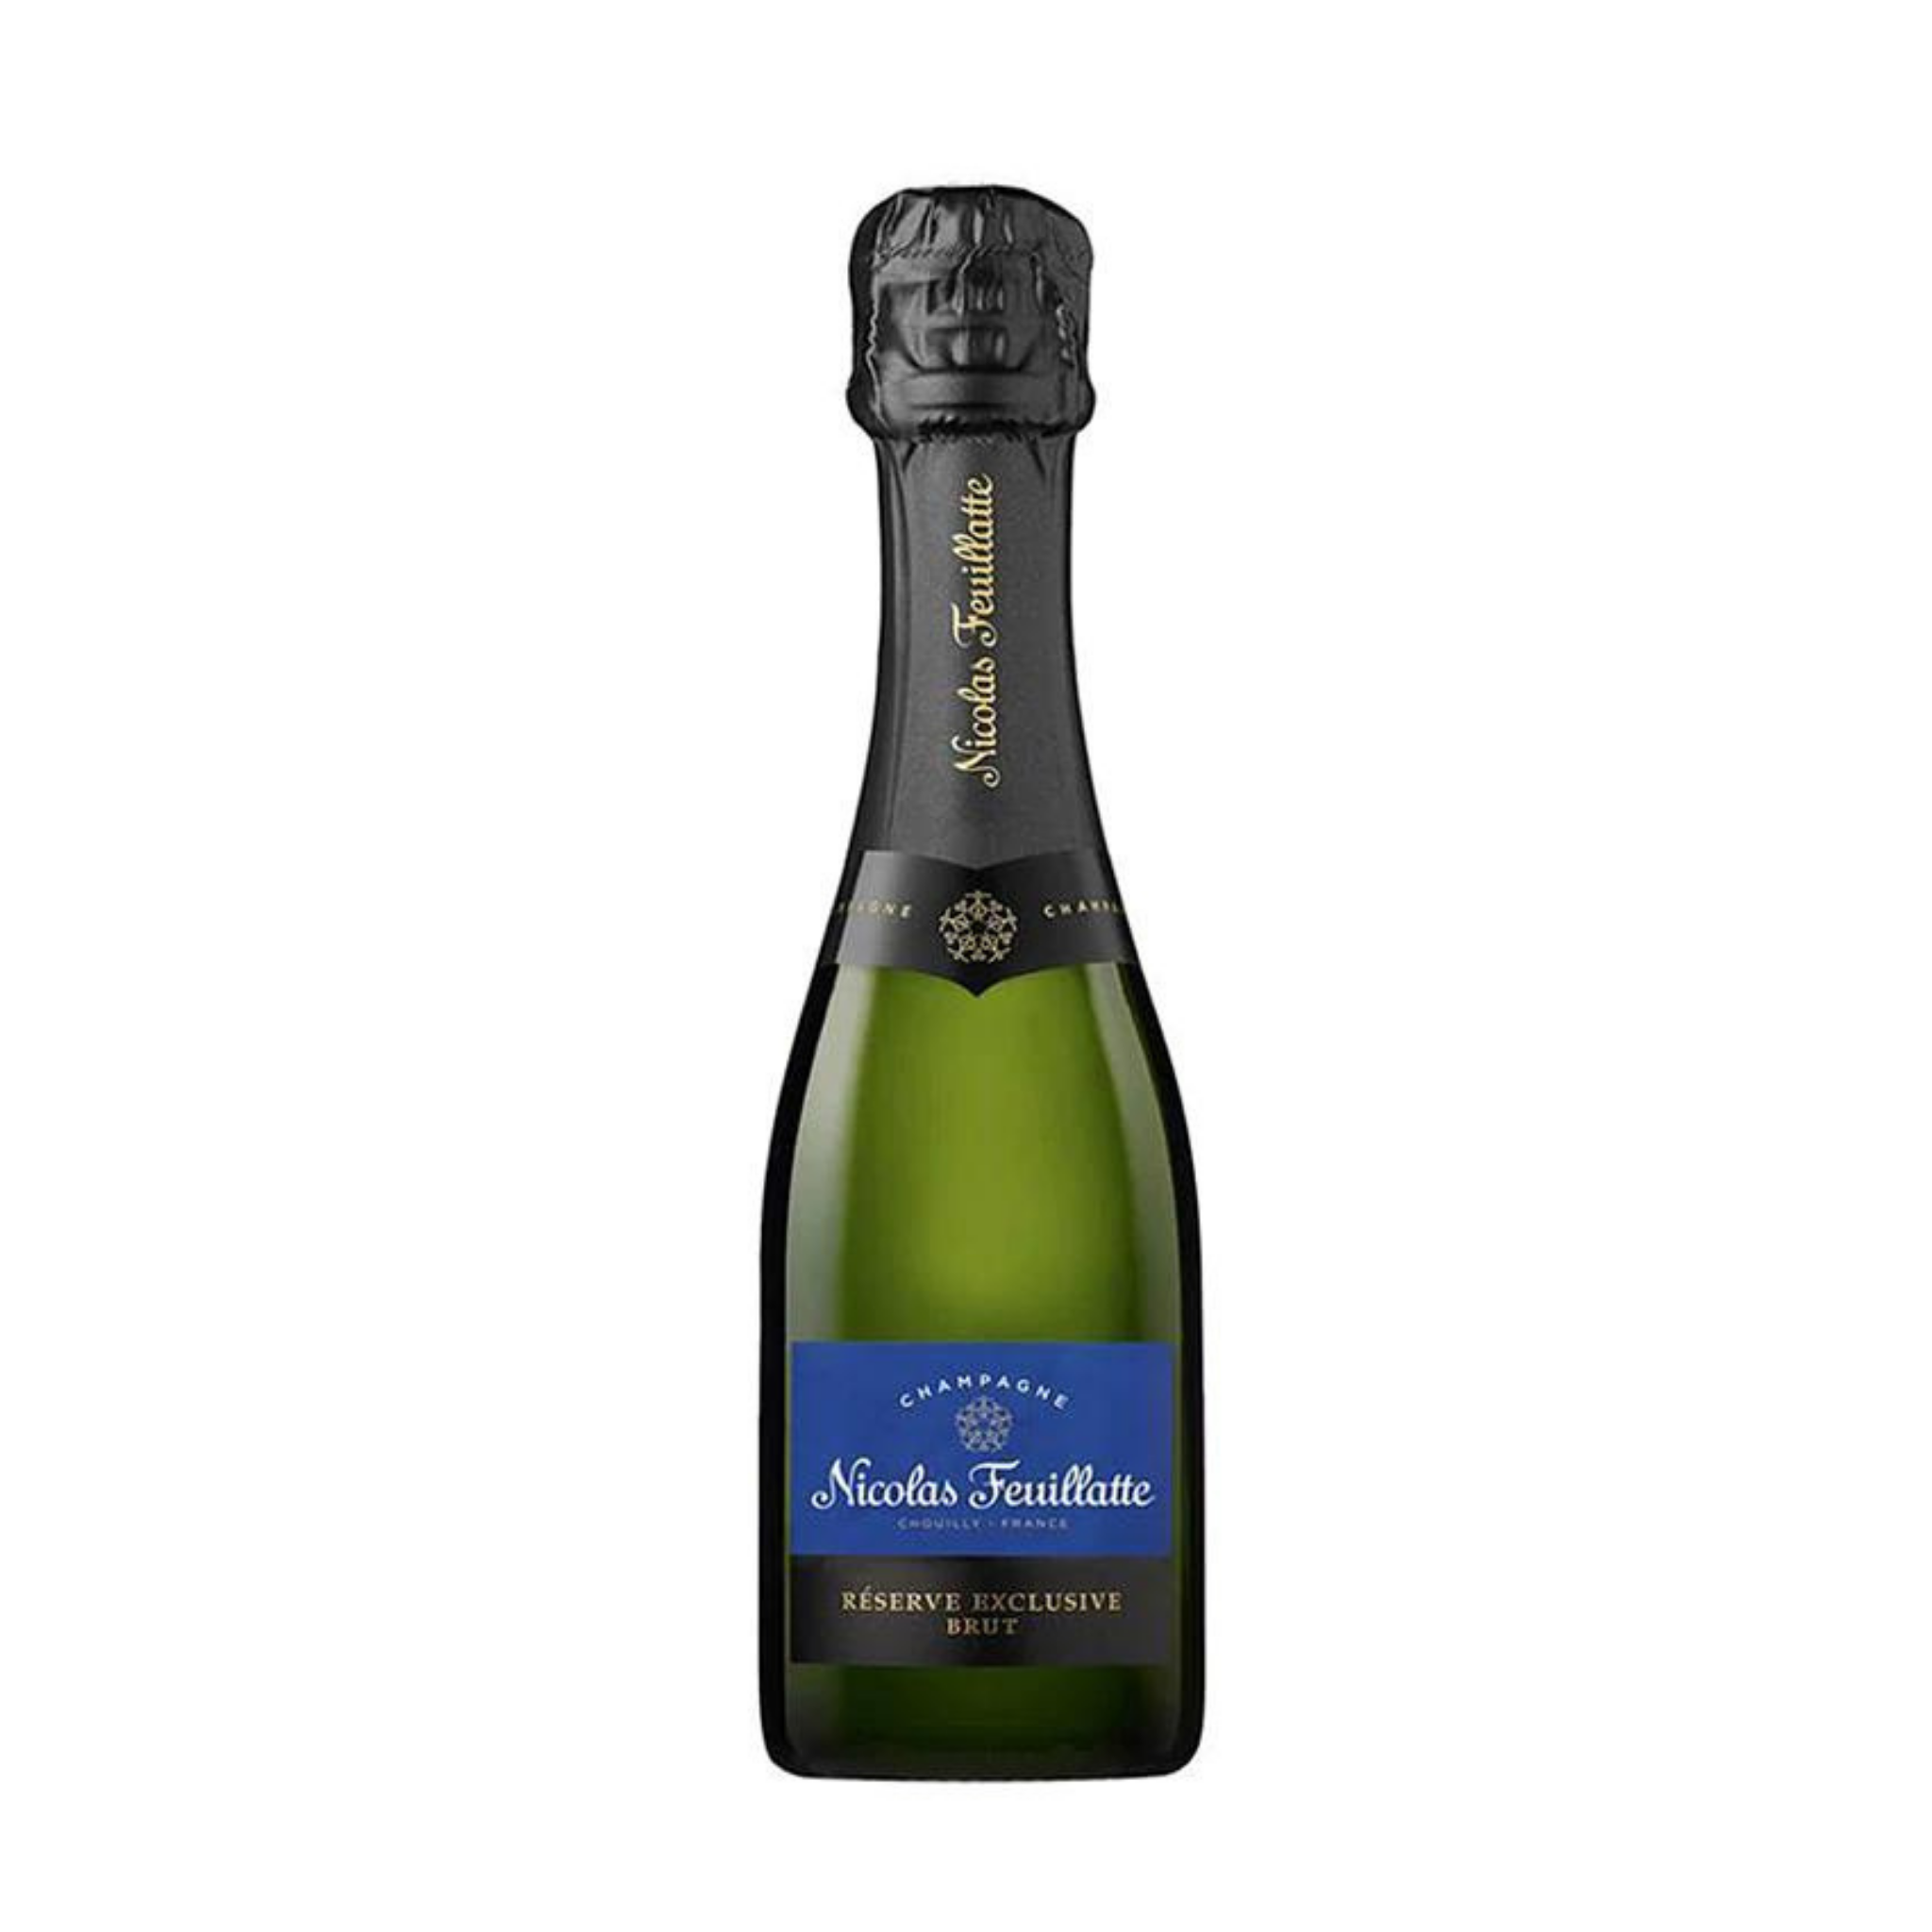 Mini Champagne Nicolas Cellar Wine Grand Feuillatte – Reserve Exclusive Brut